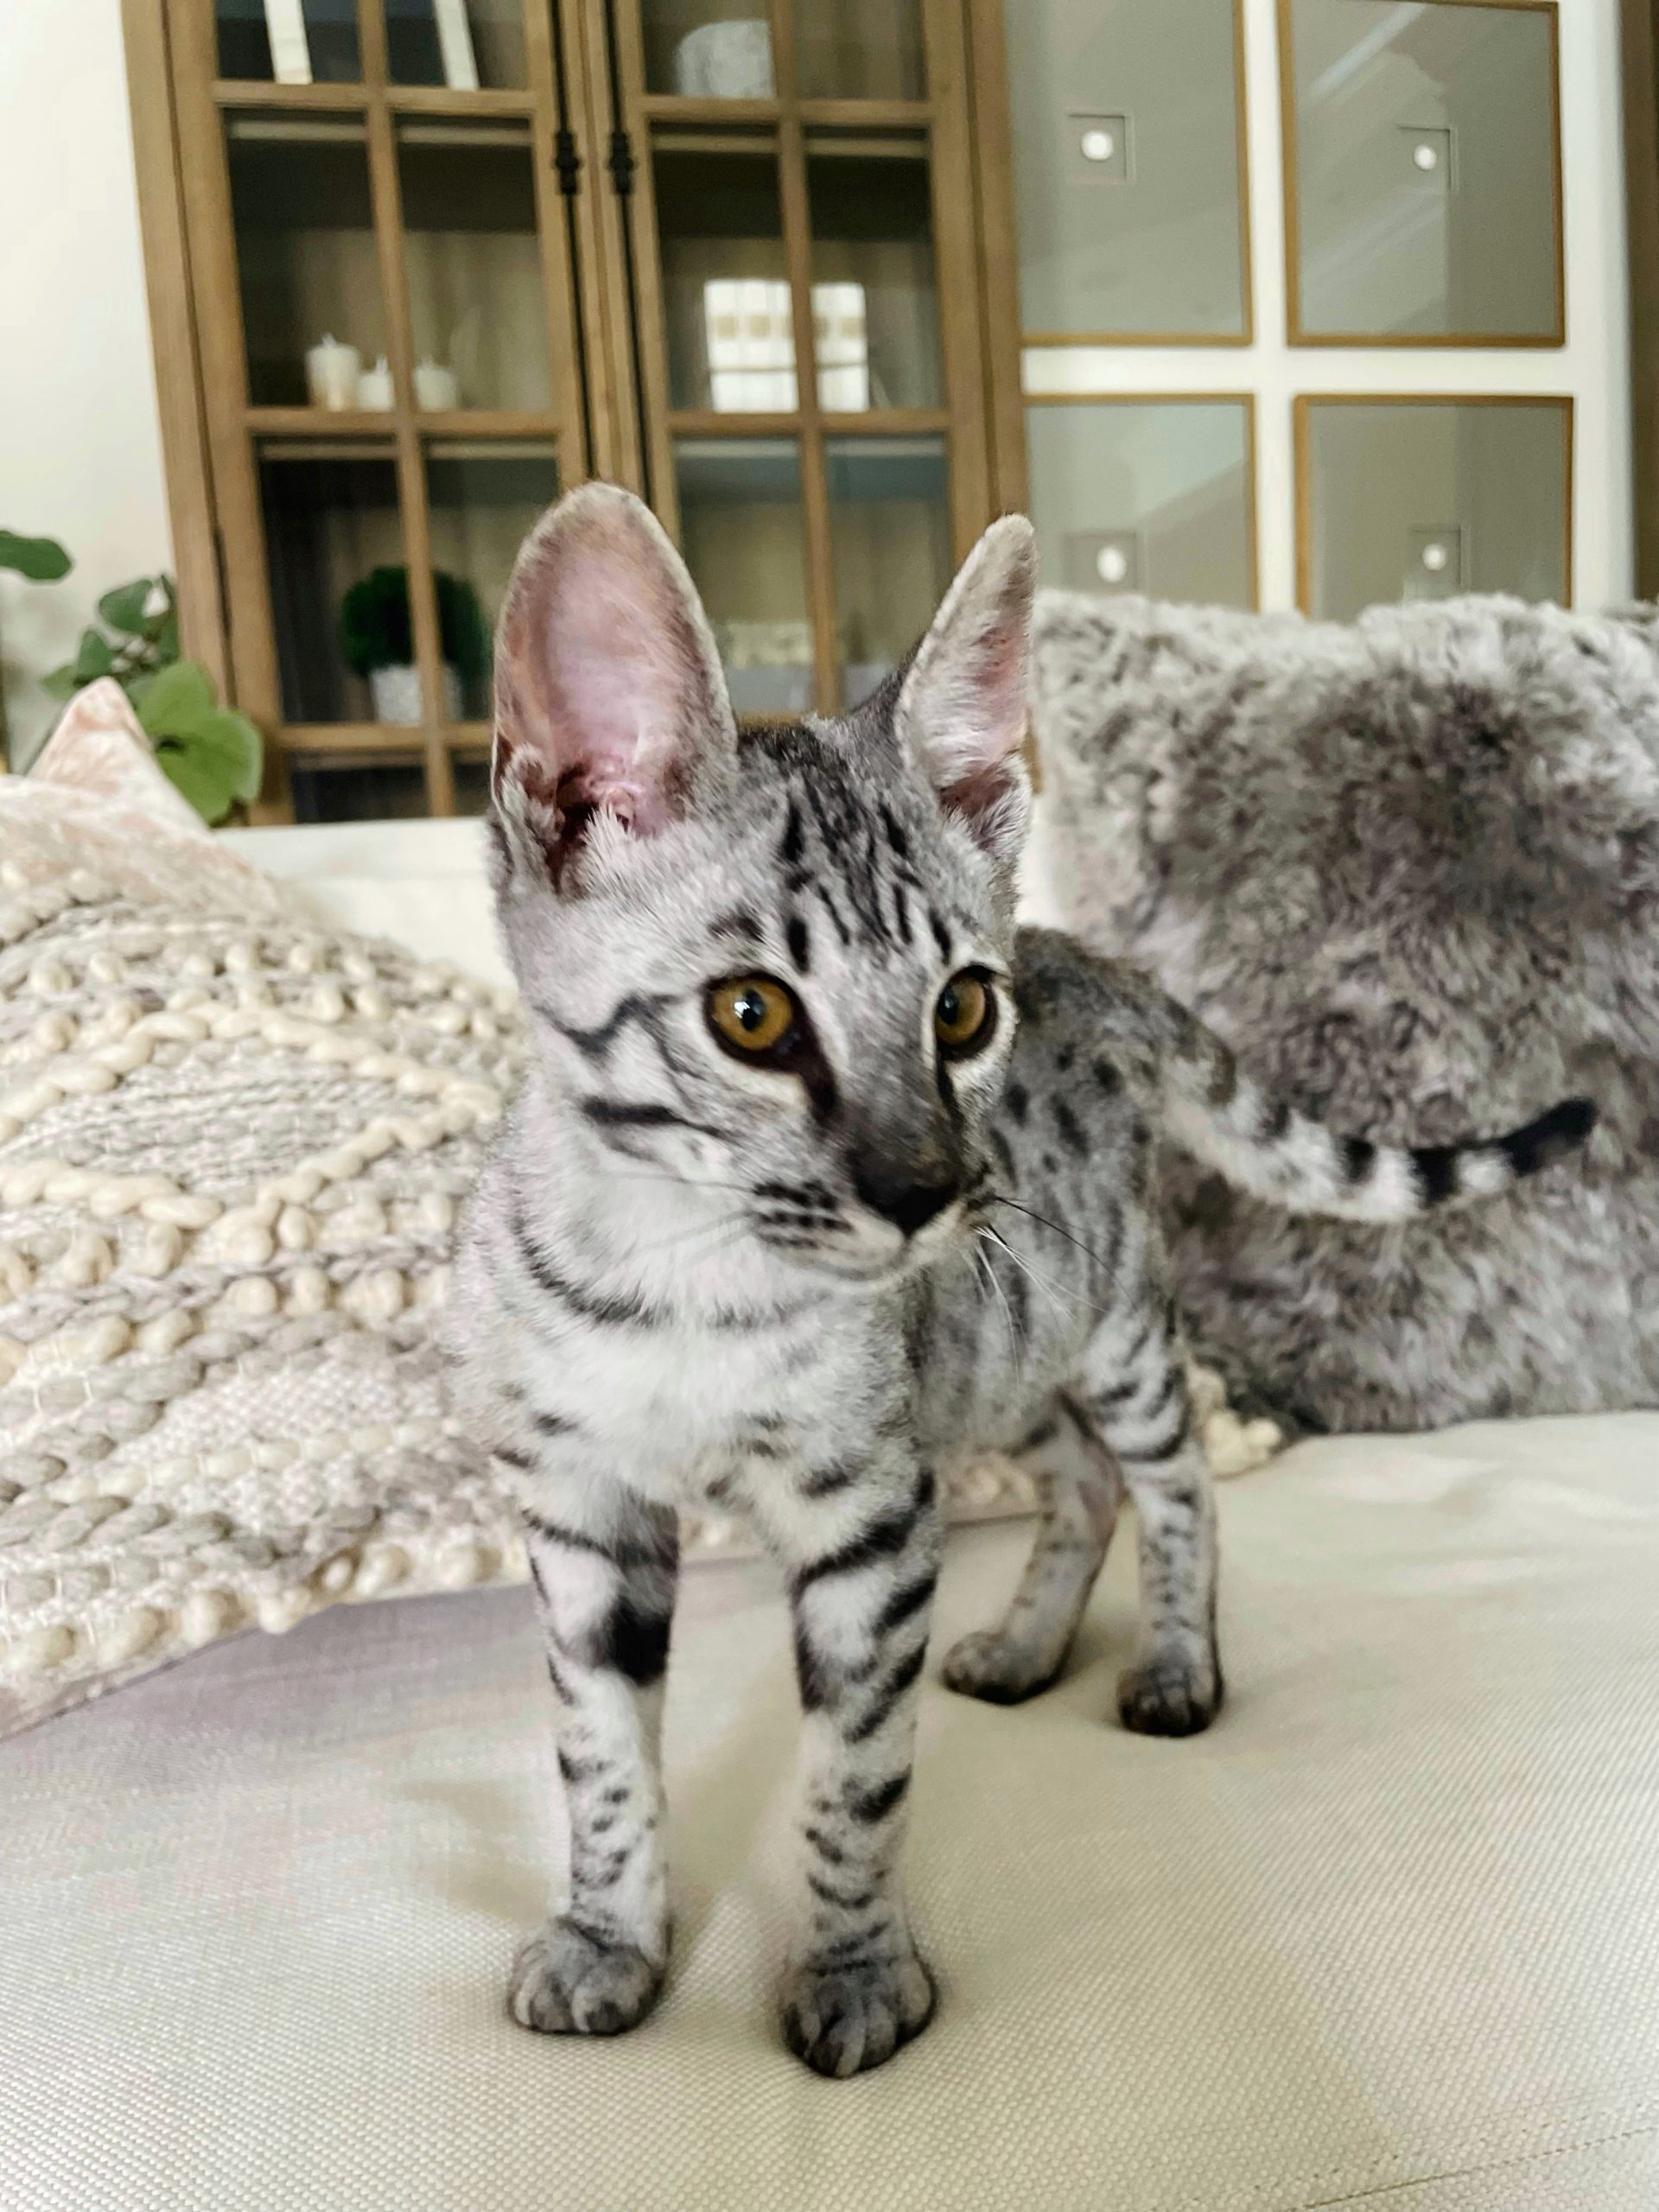 Silver Savannah Cat